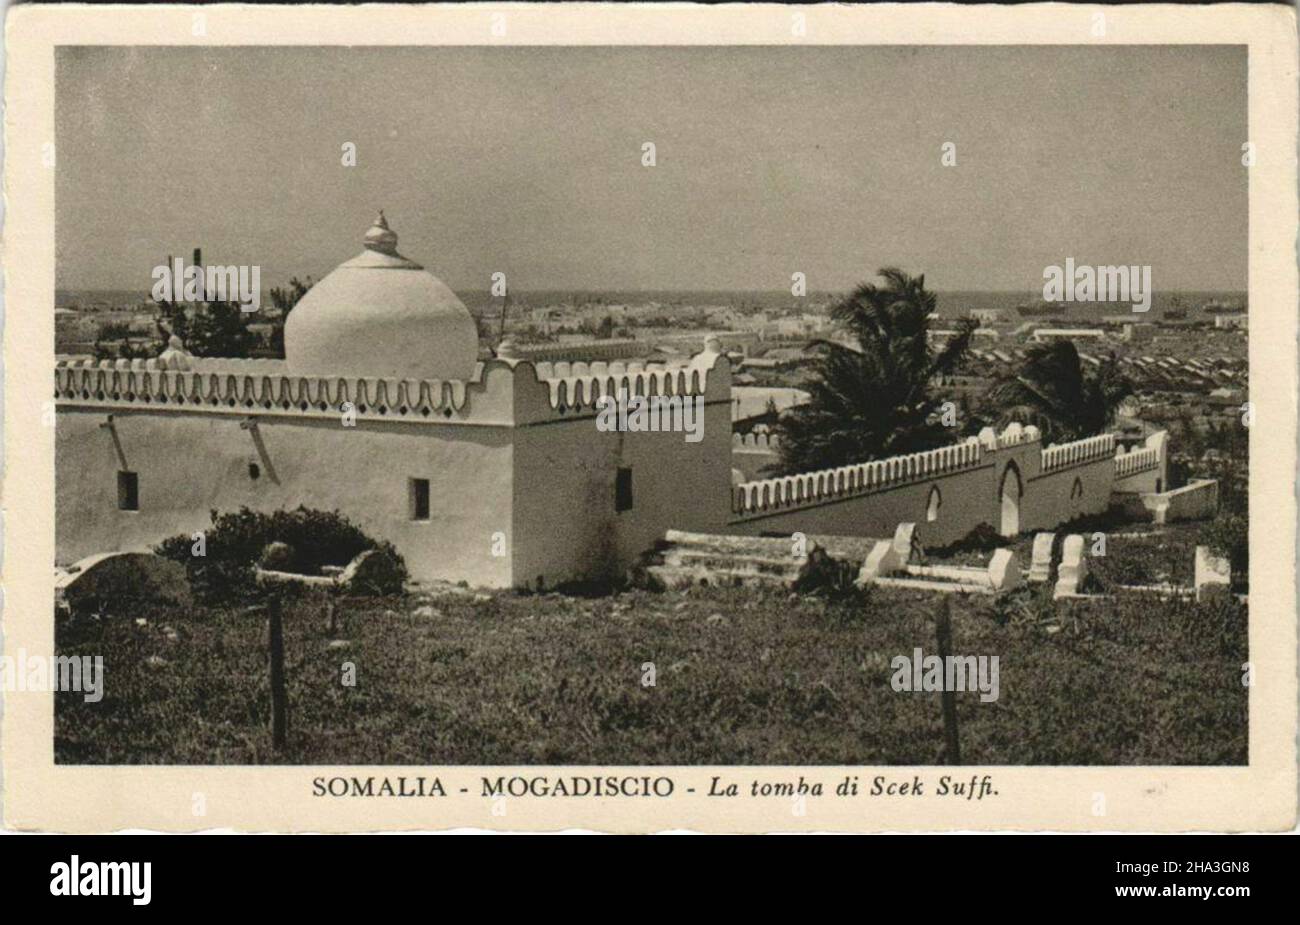 Carte postale historique de l'italien somalien (1930 environ) Banque D'Images